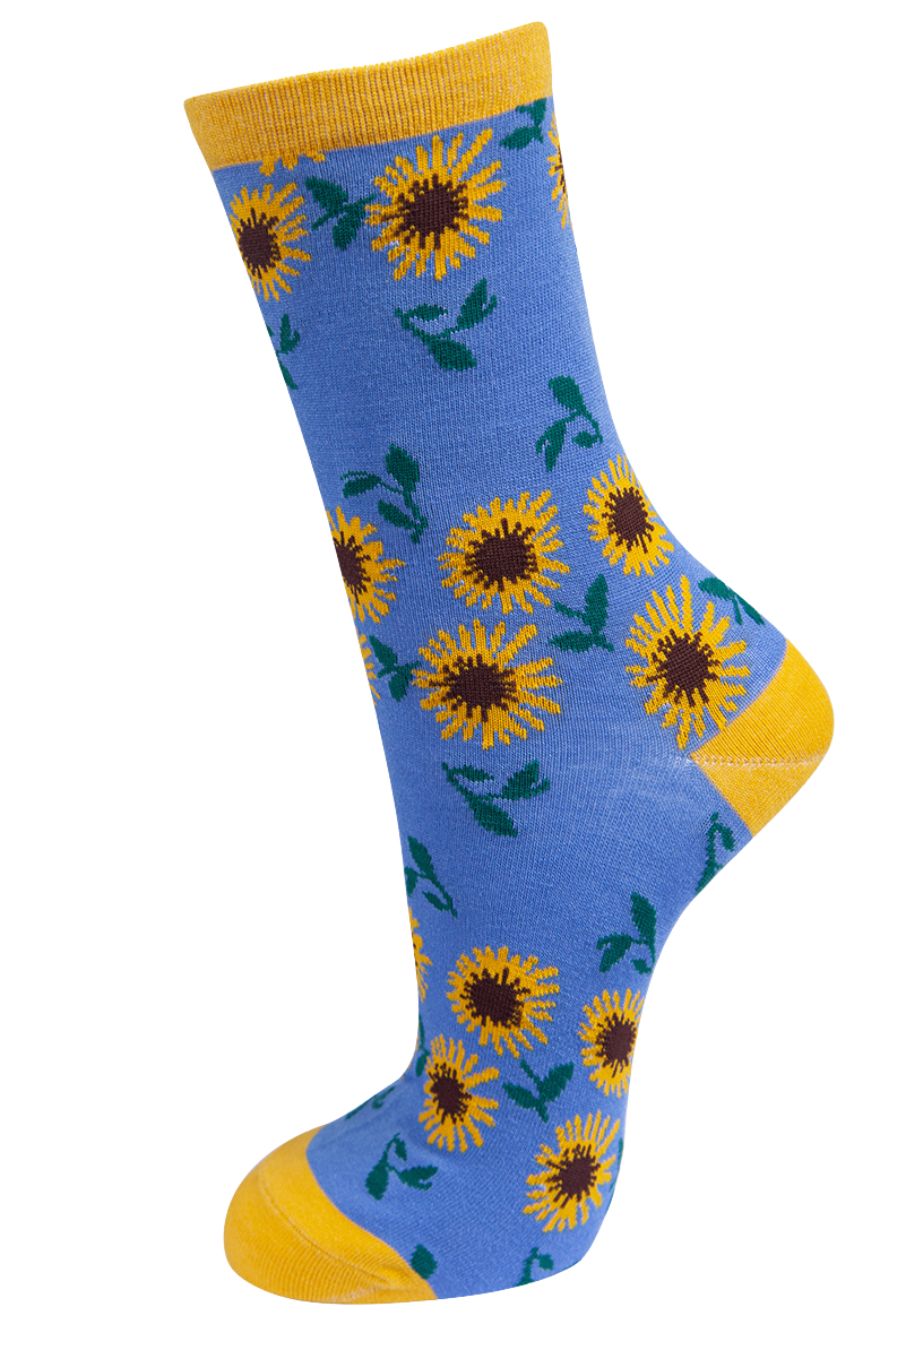 Womens Bamboo Socks Sunflower Floral Print Ankle Socks Blue